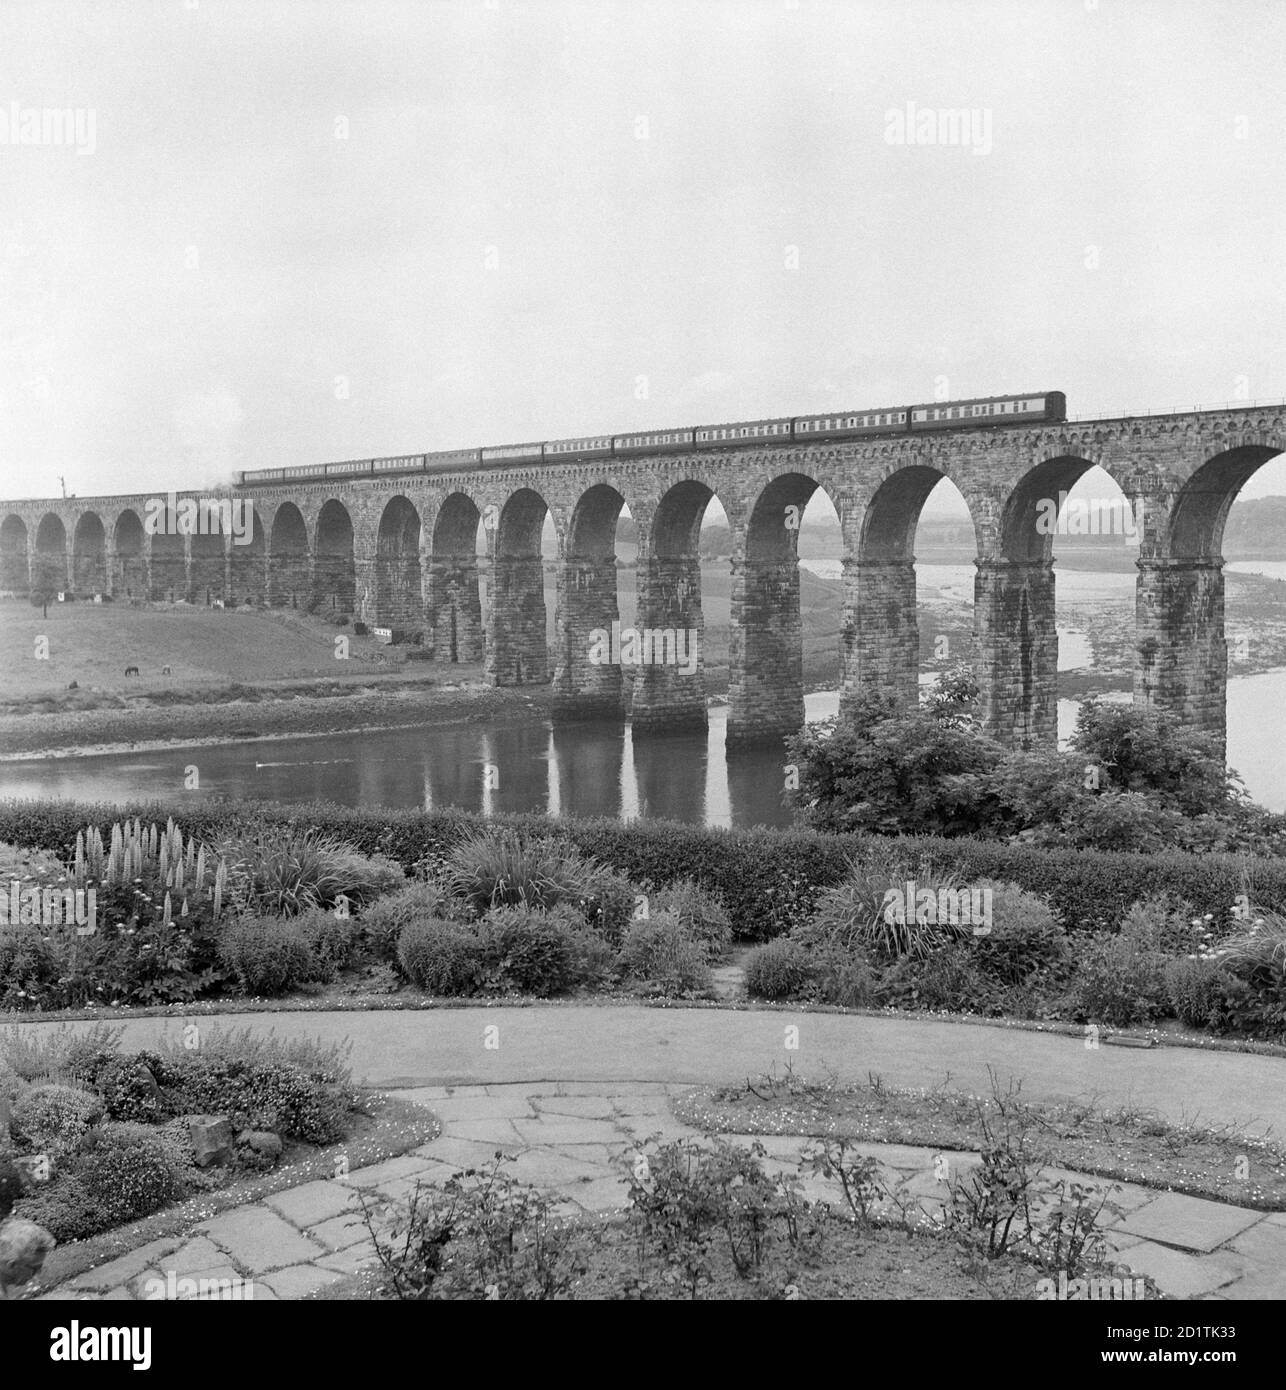 ROYAL BORDER BRIDGE, Berwick upon Tweed, Northumberland. Ein Zug, der das Royal Border Railway Viaduct überquert. Das Viadukt mit 28 Bögen wurde von Robert Stephenson entworfen und 1850 von Königin Victoria eröffnet. Fotografiert von Eric de Mare. Stockfoto